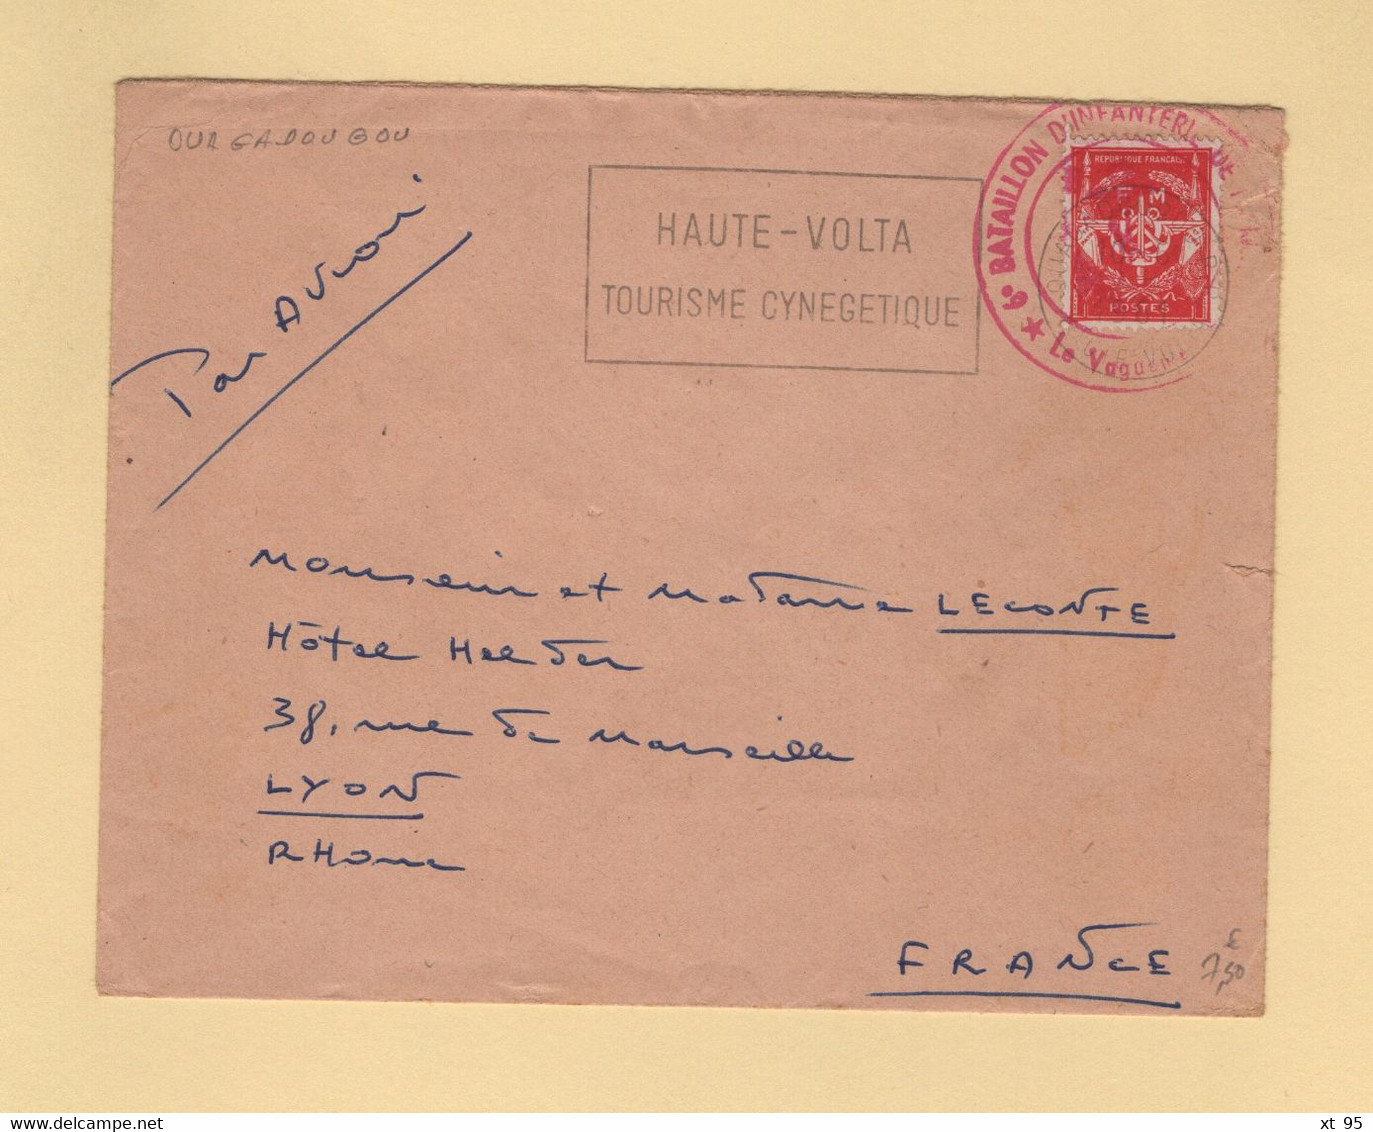 Timbre FM - Haute Volta - Ouagadoudou - 6e Bataillon D Infanterie De Marine - Military Postage Stamps